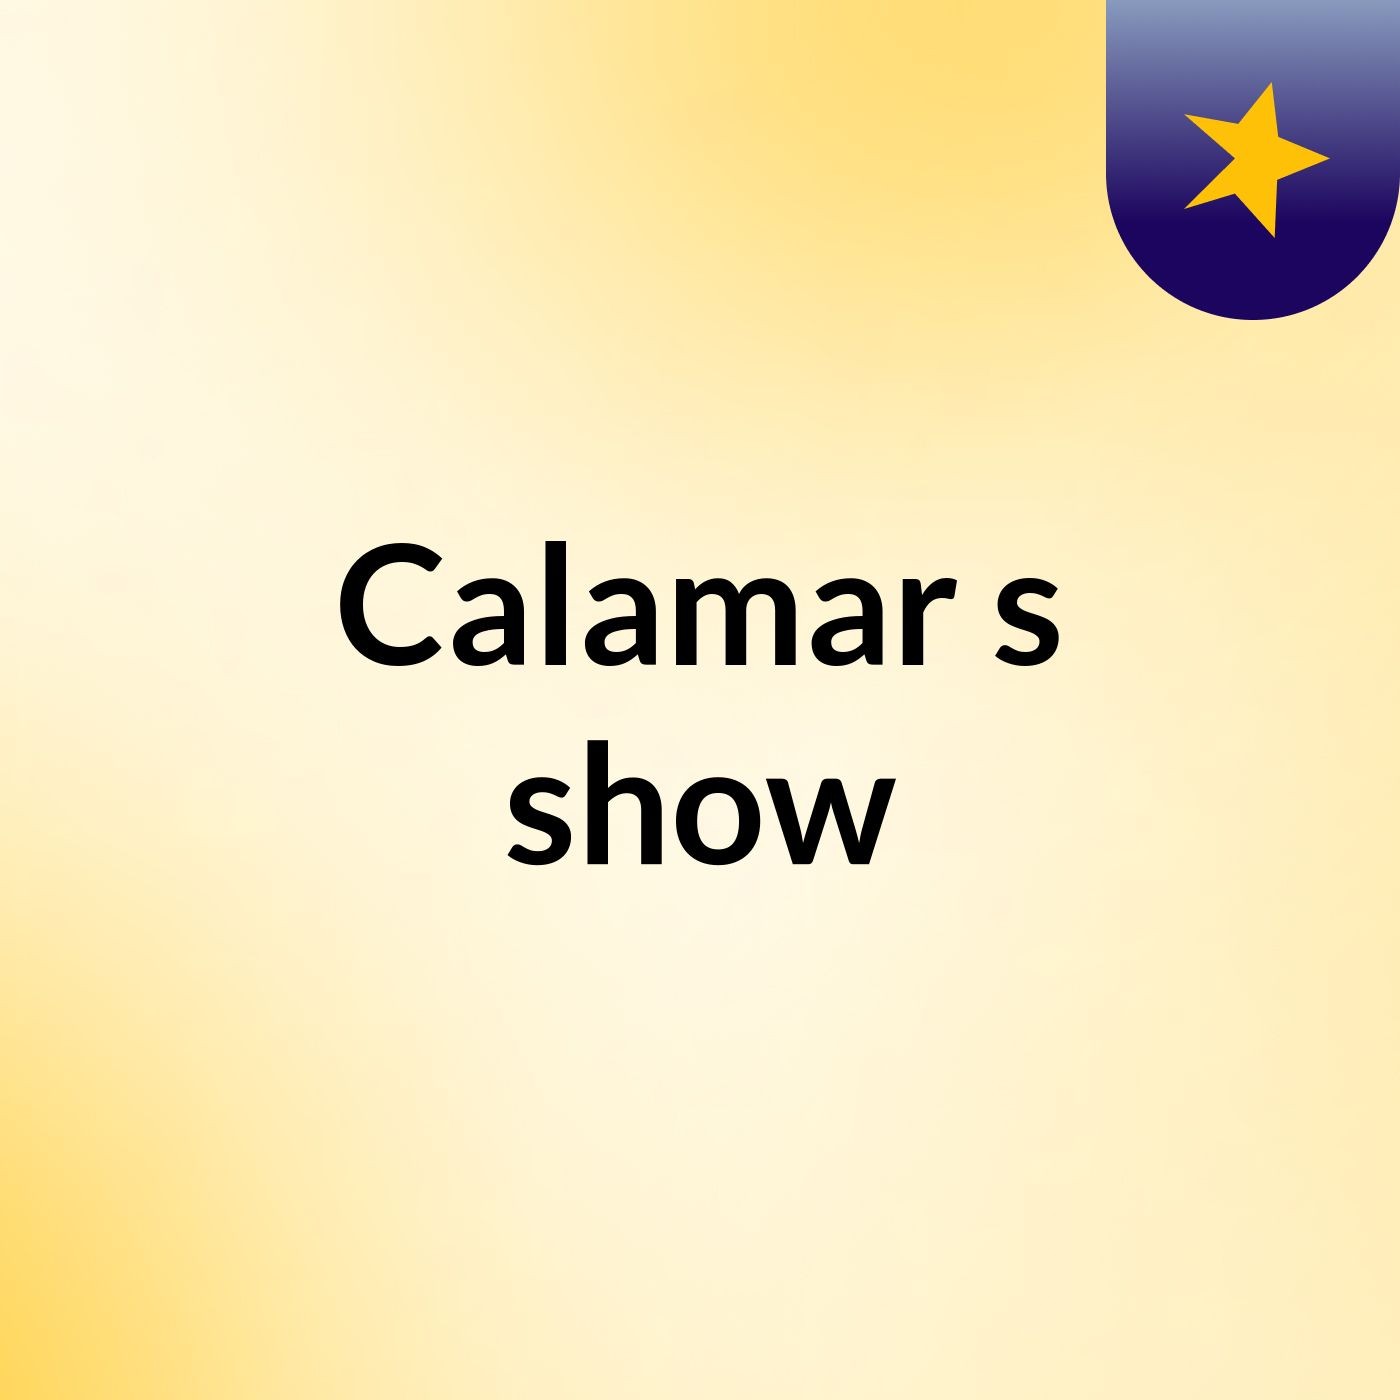 Calamar's show